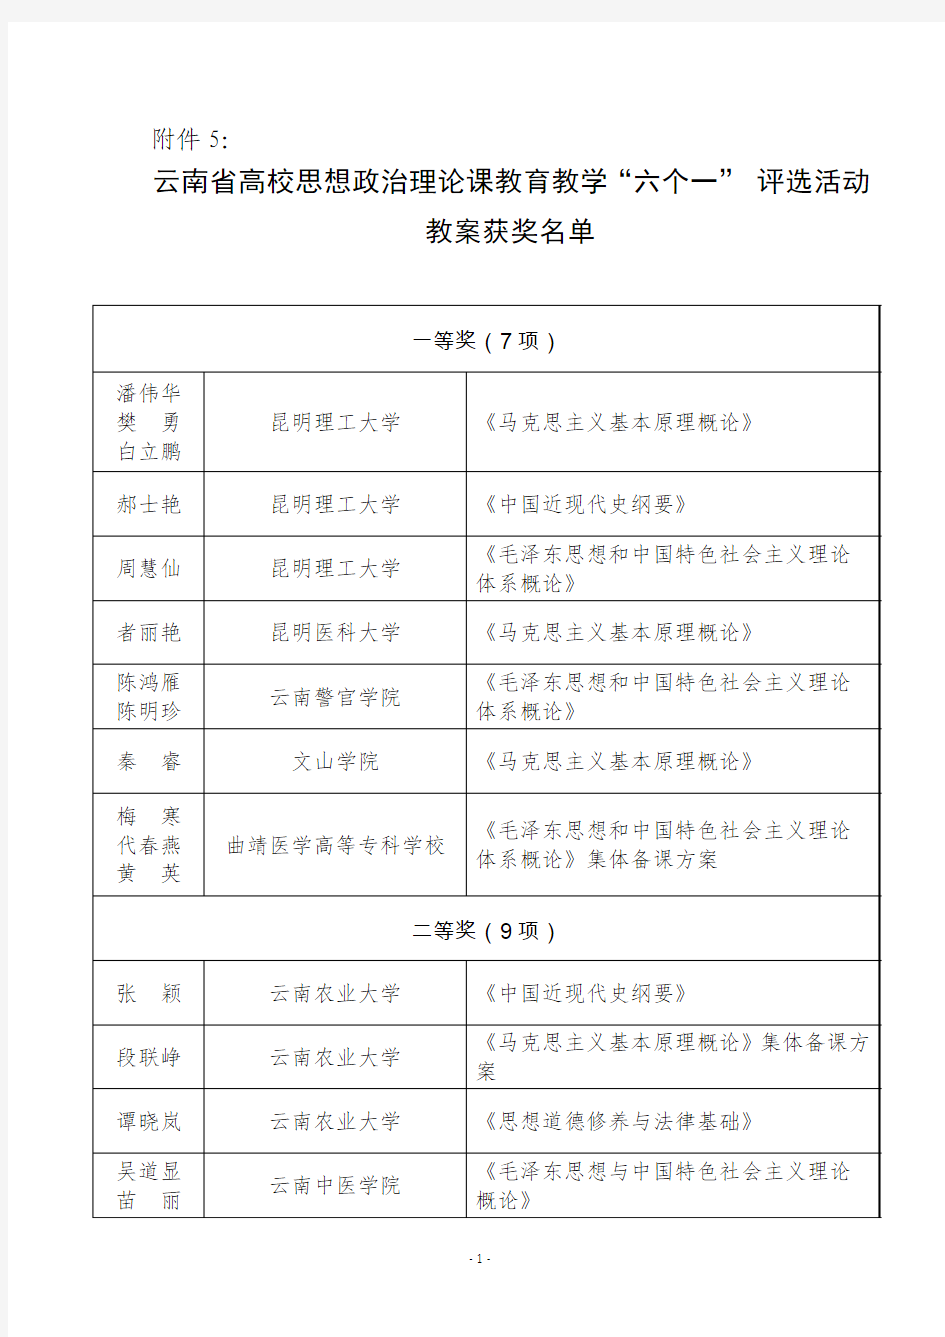 云南省高校思想政治理论课教育教学“六个一” 评选活动教案获奖名单